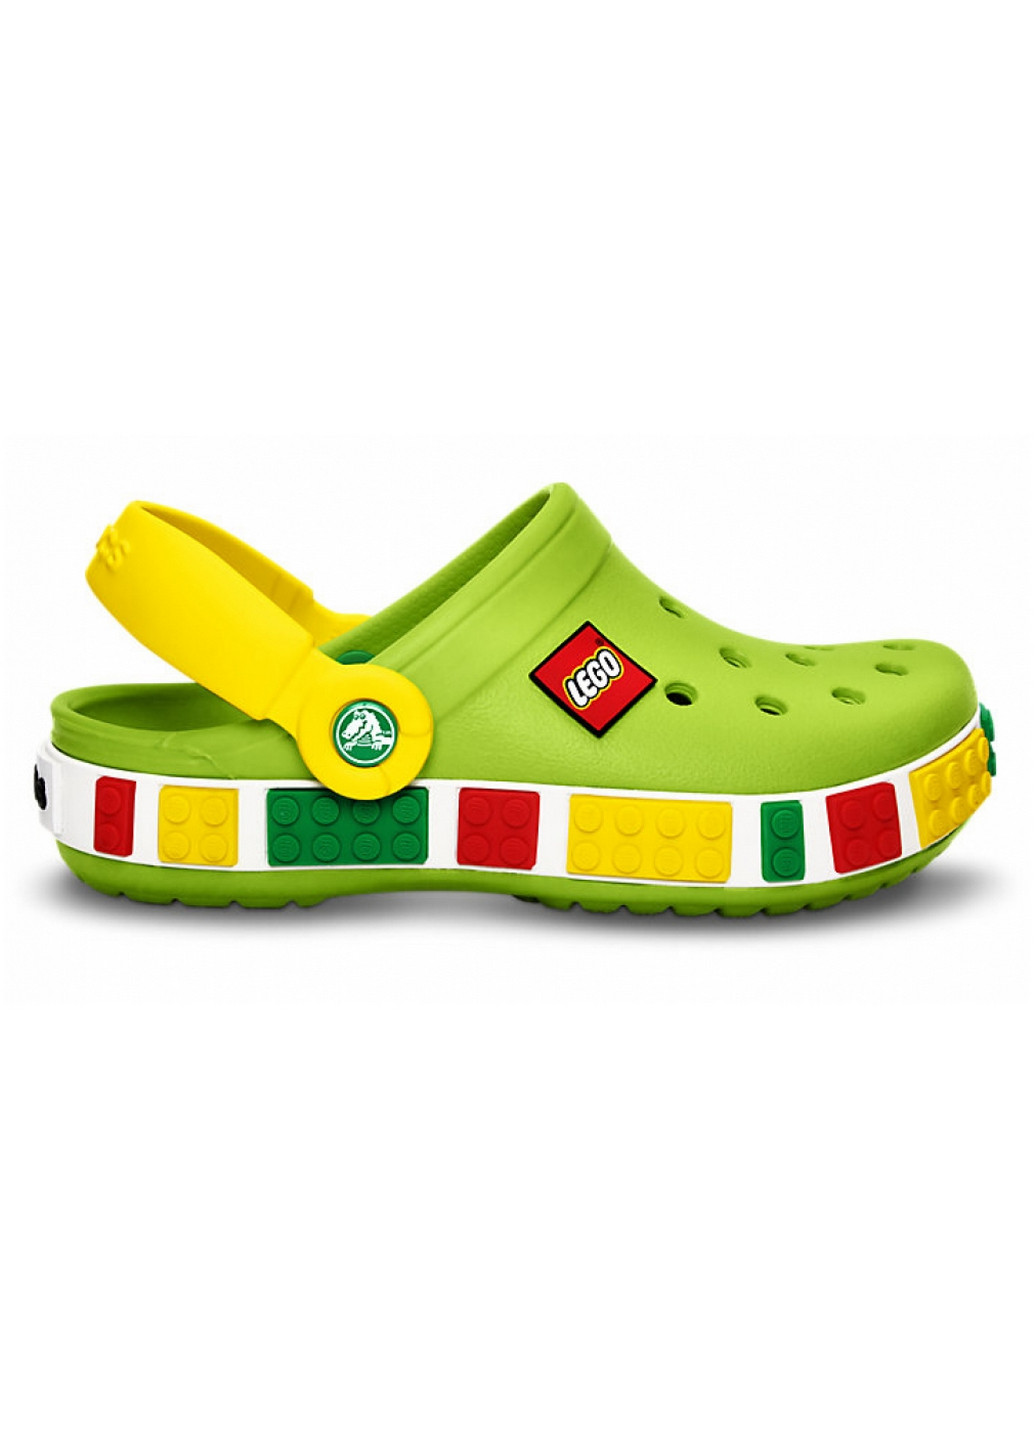 Зеленые сабо крокс Crocs